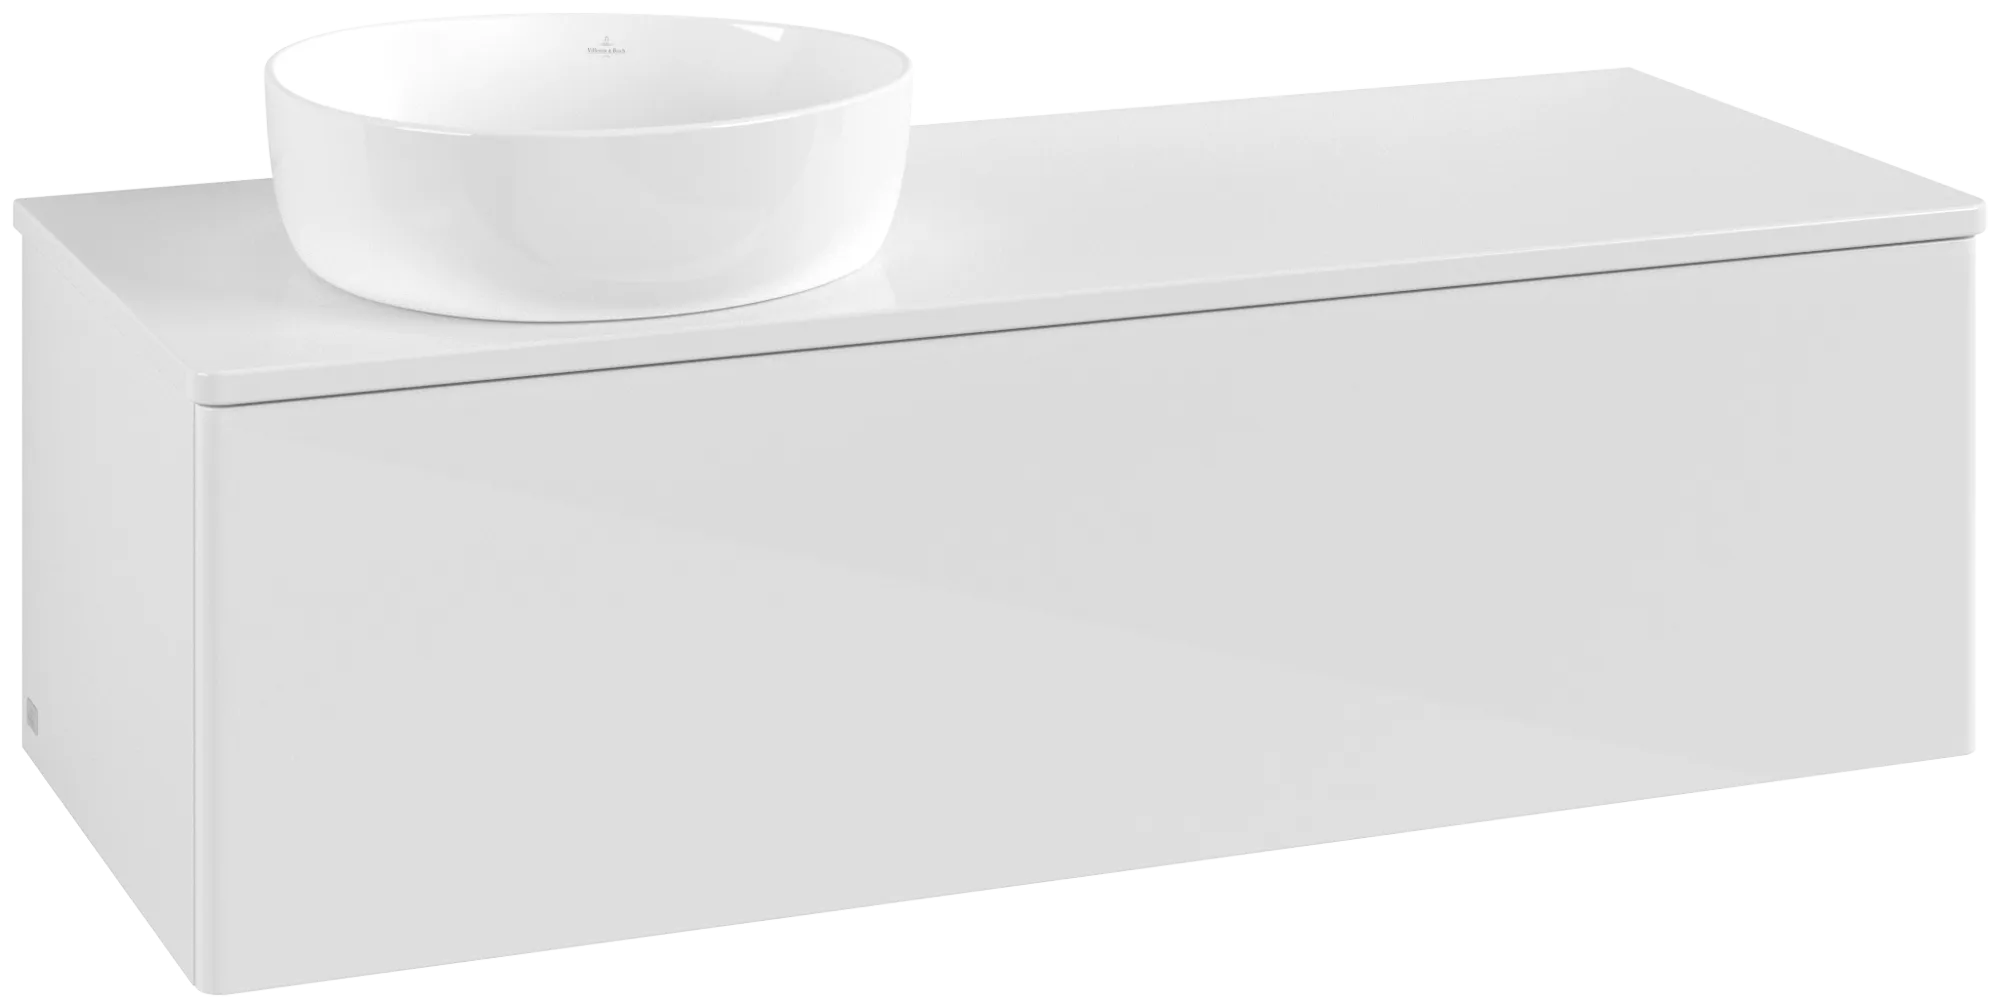 Bild von VILLEROY BOCH Antao Waschbeckenunterschrank, mit Beleuchtung, 1 Auszug, 1200 x 360 x 500 mm, Front ohne Struktur, Glossy White Lacquer / Glossy White Lacquer #L33050GF